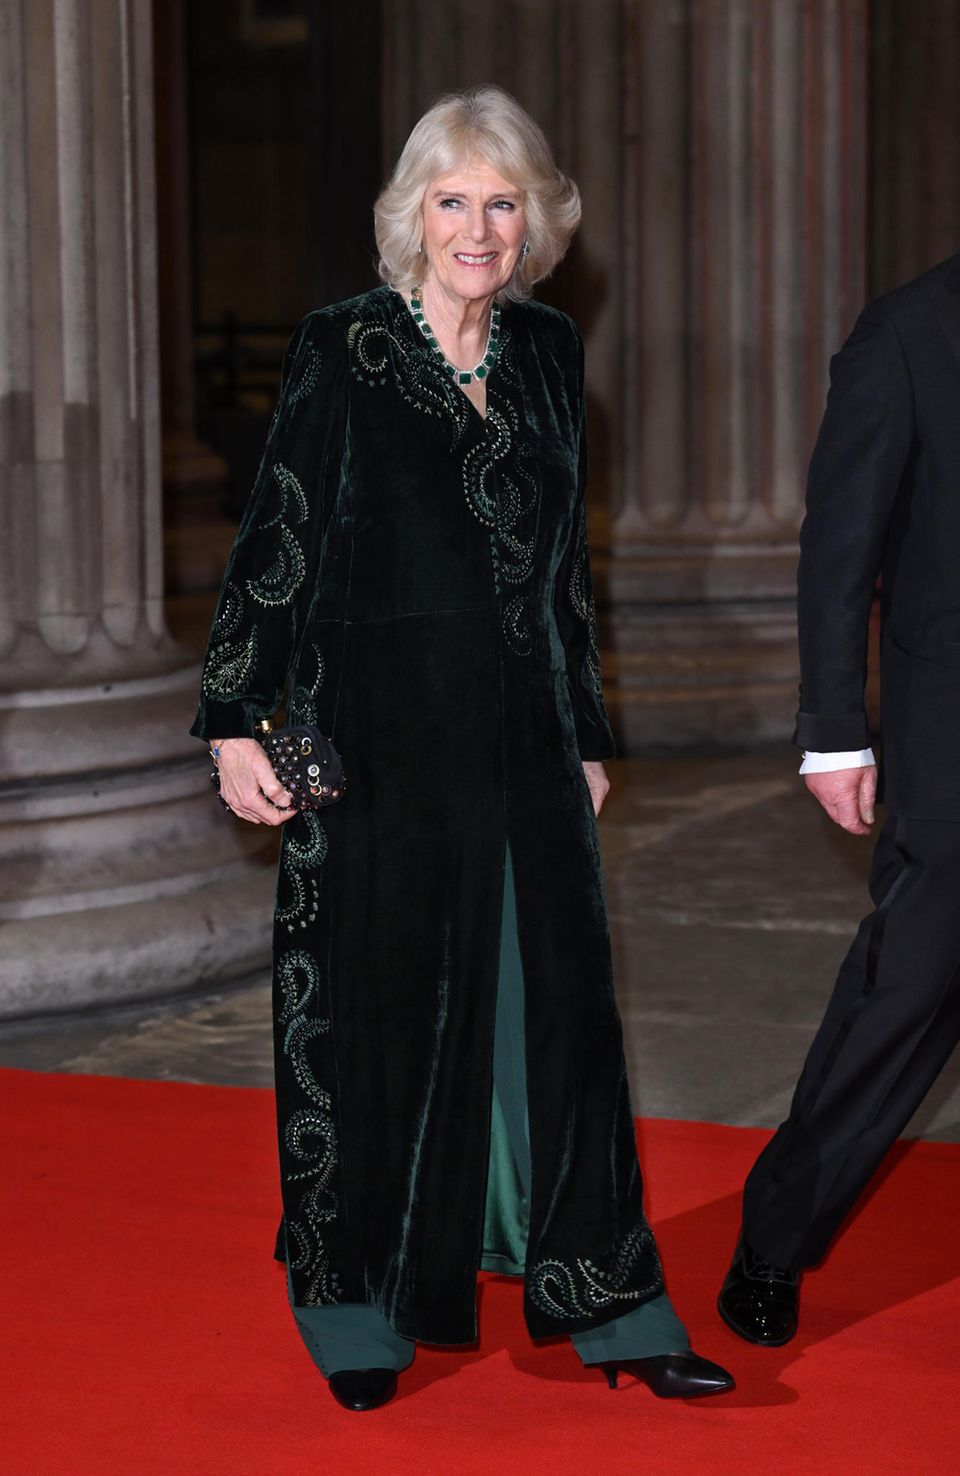 Herzogin Camilla strahlt in einem dunkelgrünen Gesamtlook – inklusive passendem Schmuck.